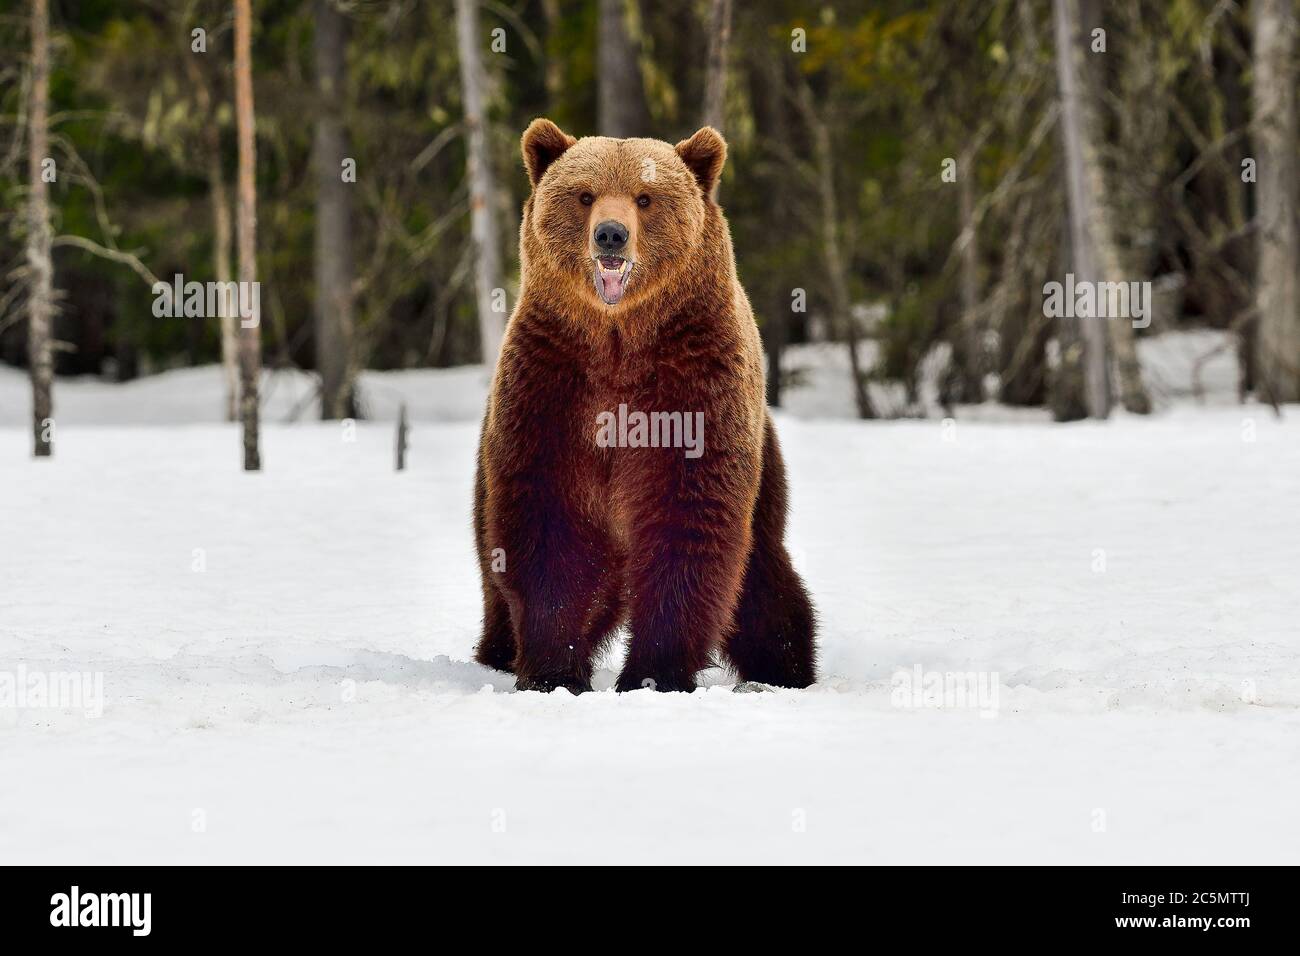 Big Brown Bär bekommt bessere Sicht über die Umgebung, indem sie aufstehen und riechen die Luft. Stockfoto